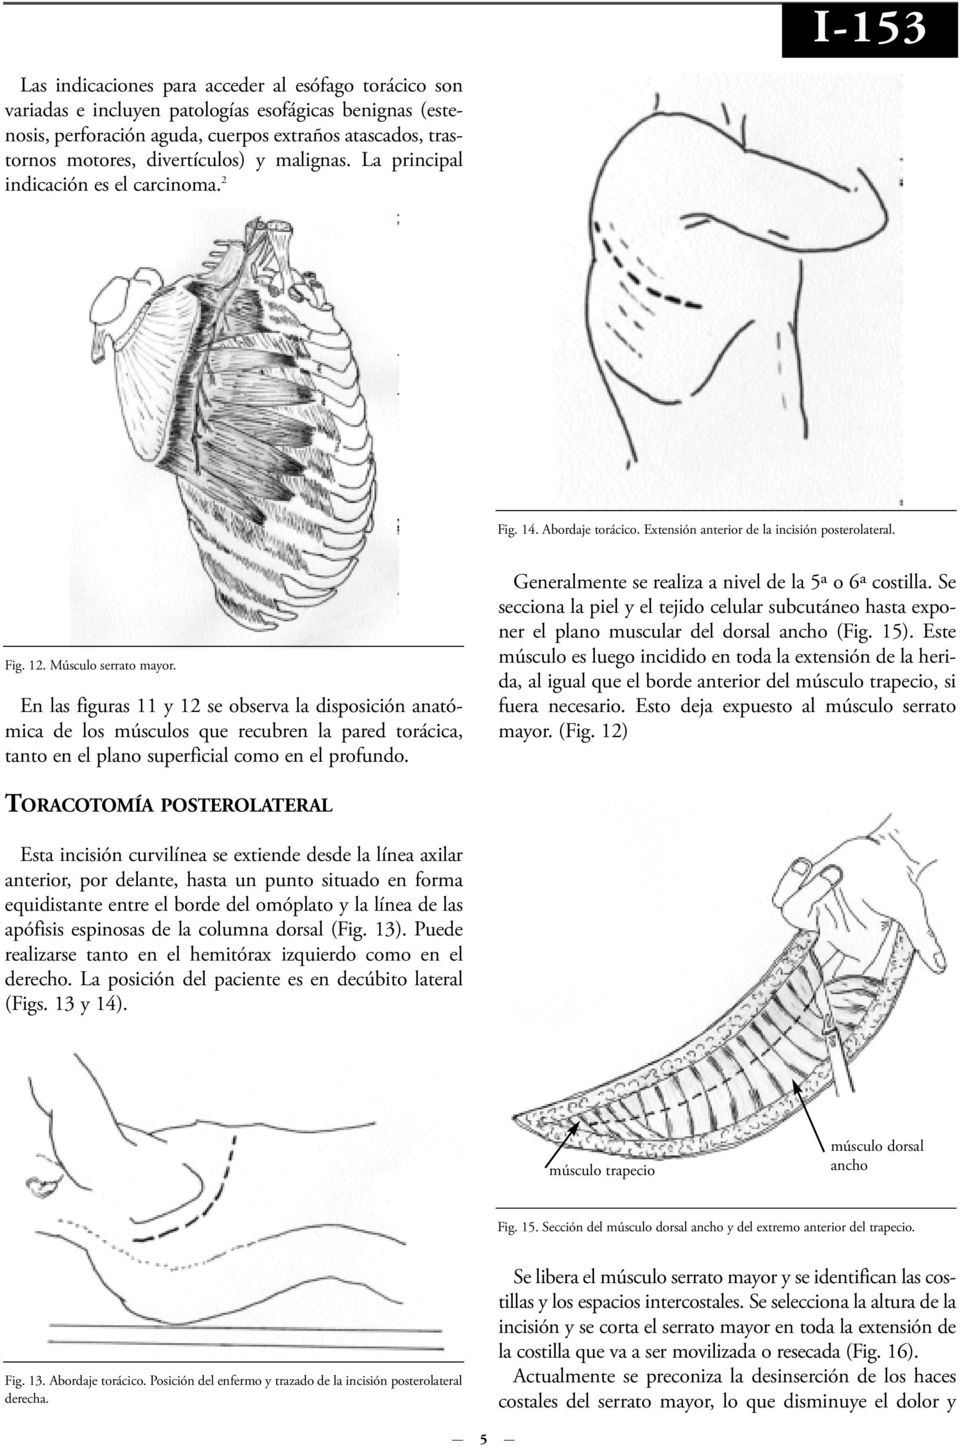 En las figuras 11 y 12 se observa la disposición anatómica de los músculos que recubren la pared torácica, tanto en el plano superficial como en el profundo.